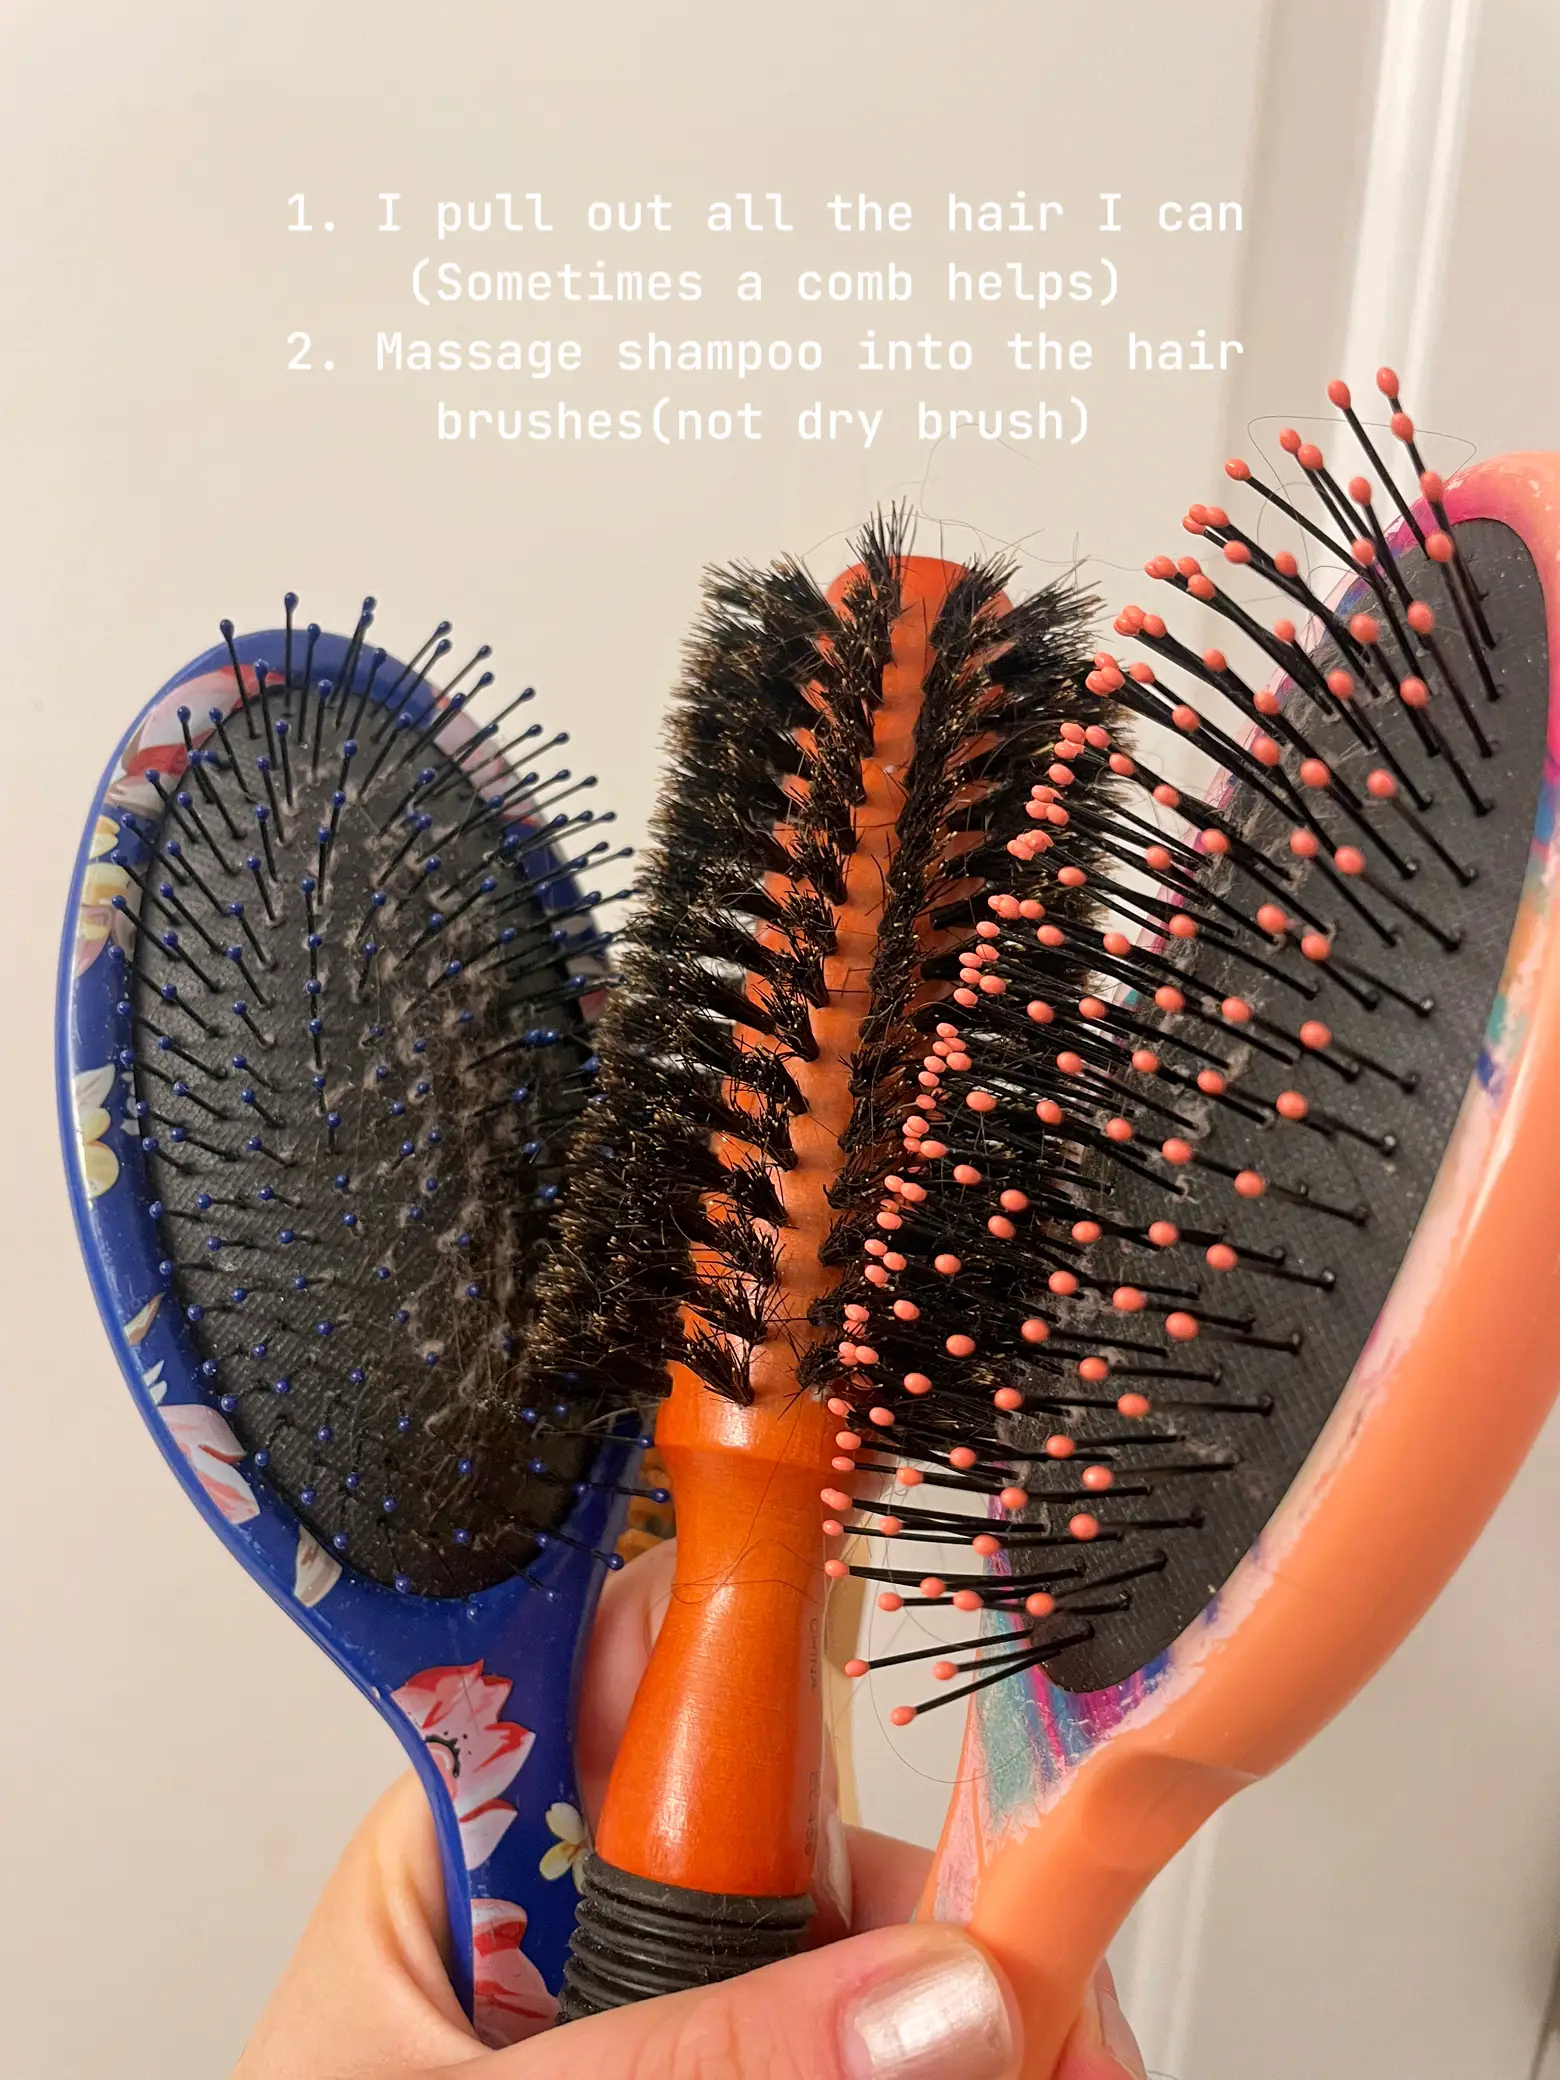 Hair brush cleaner solution 